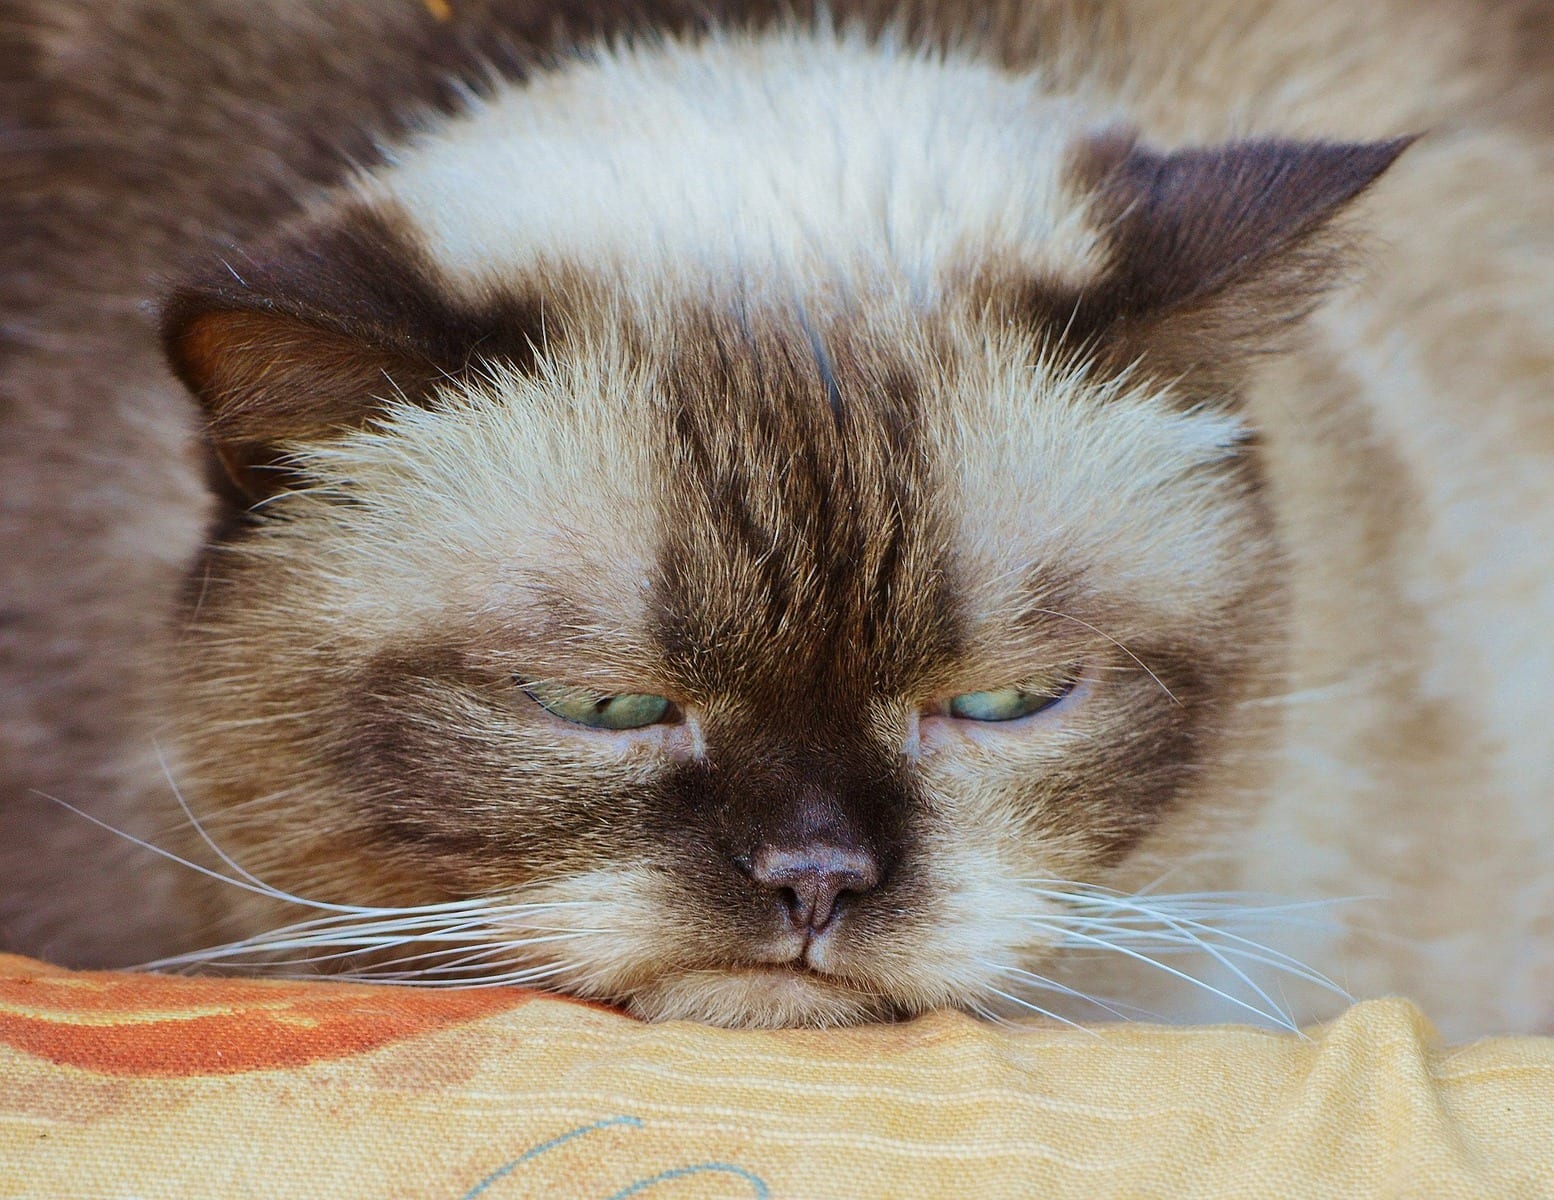 Zu sehen ist eine Katze, die wütend und enttäuscht gleichzeitig guckt. Sie liegt auf einem orangen Tuch und guckt nach unten.